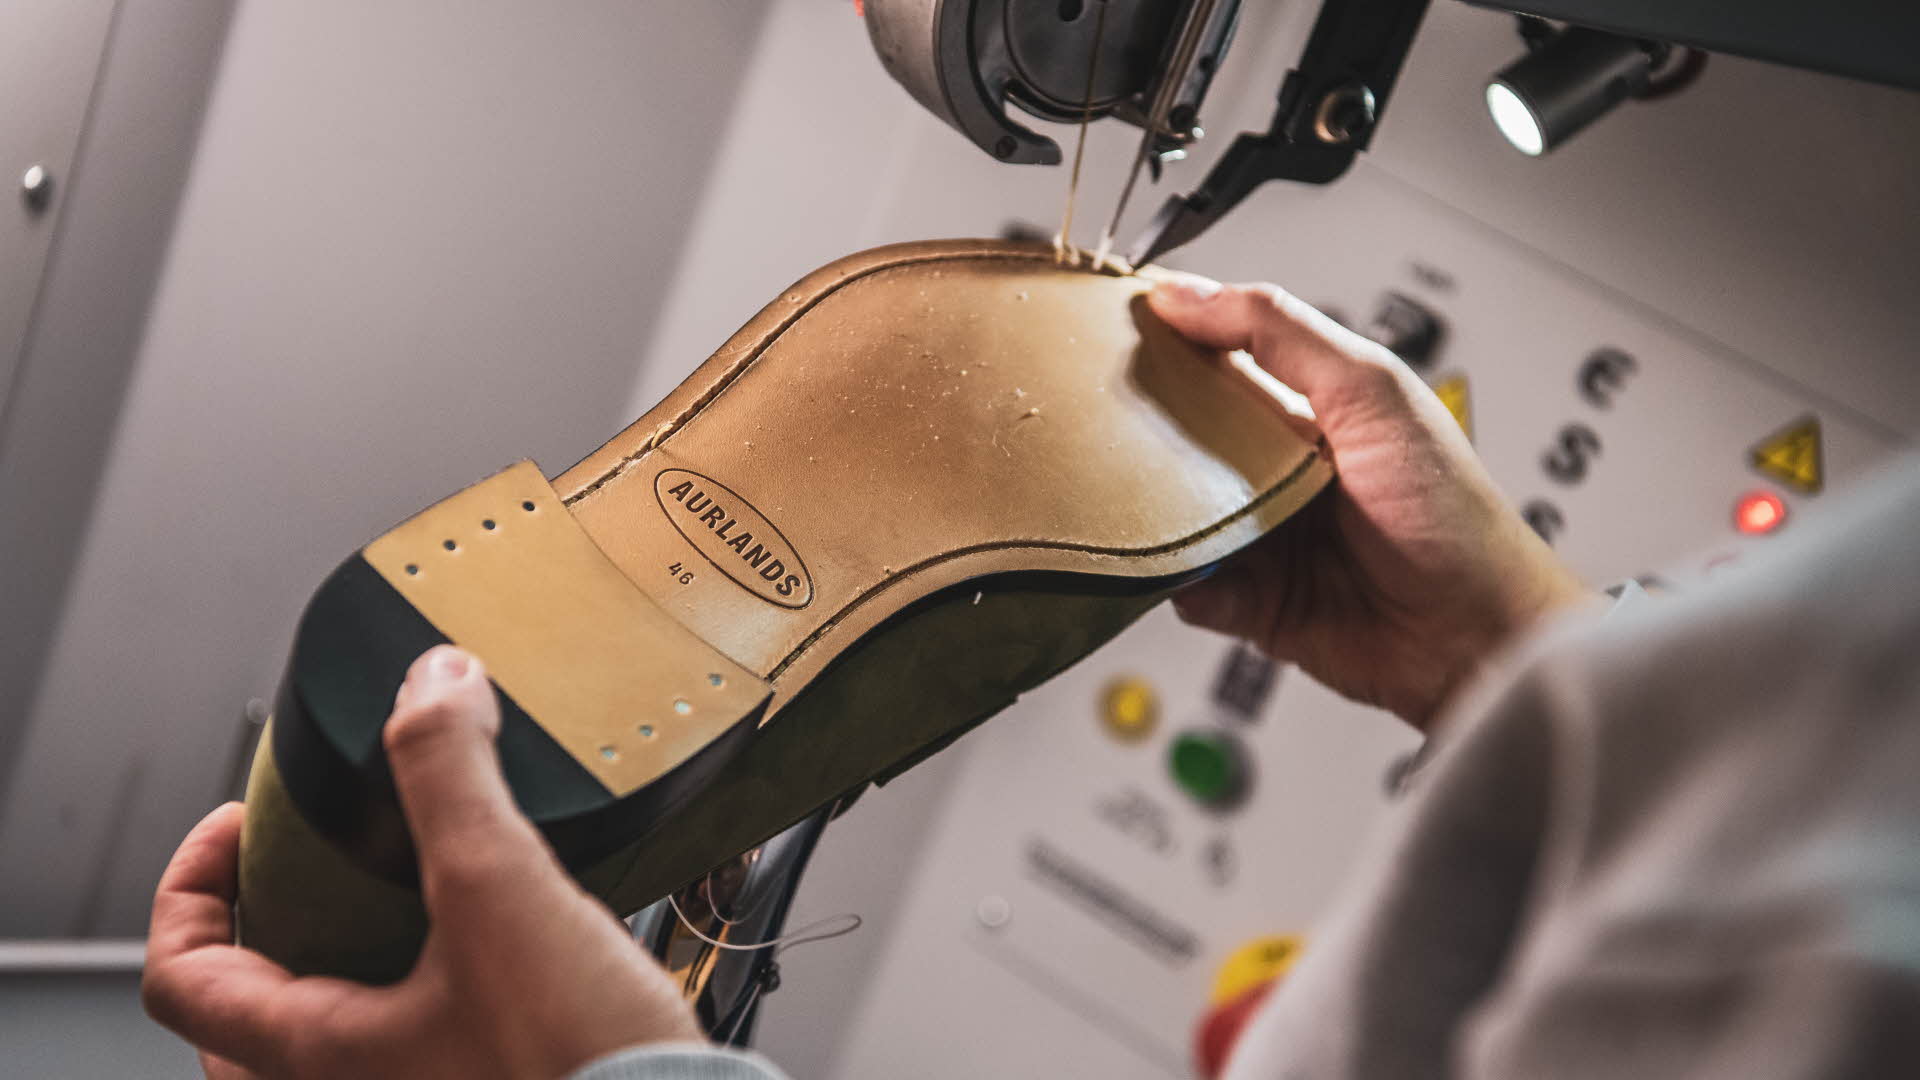 労働者がアウルランドシューズの靴底を縫っています。ミシンに取り付けられたミニスポットライトには、Aurlands(アウルランド)の新しいロゴが入っています。